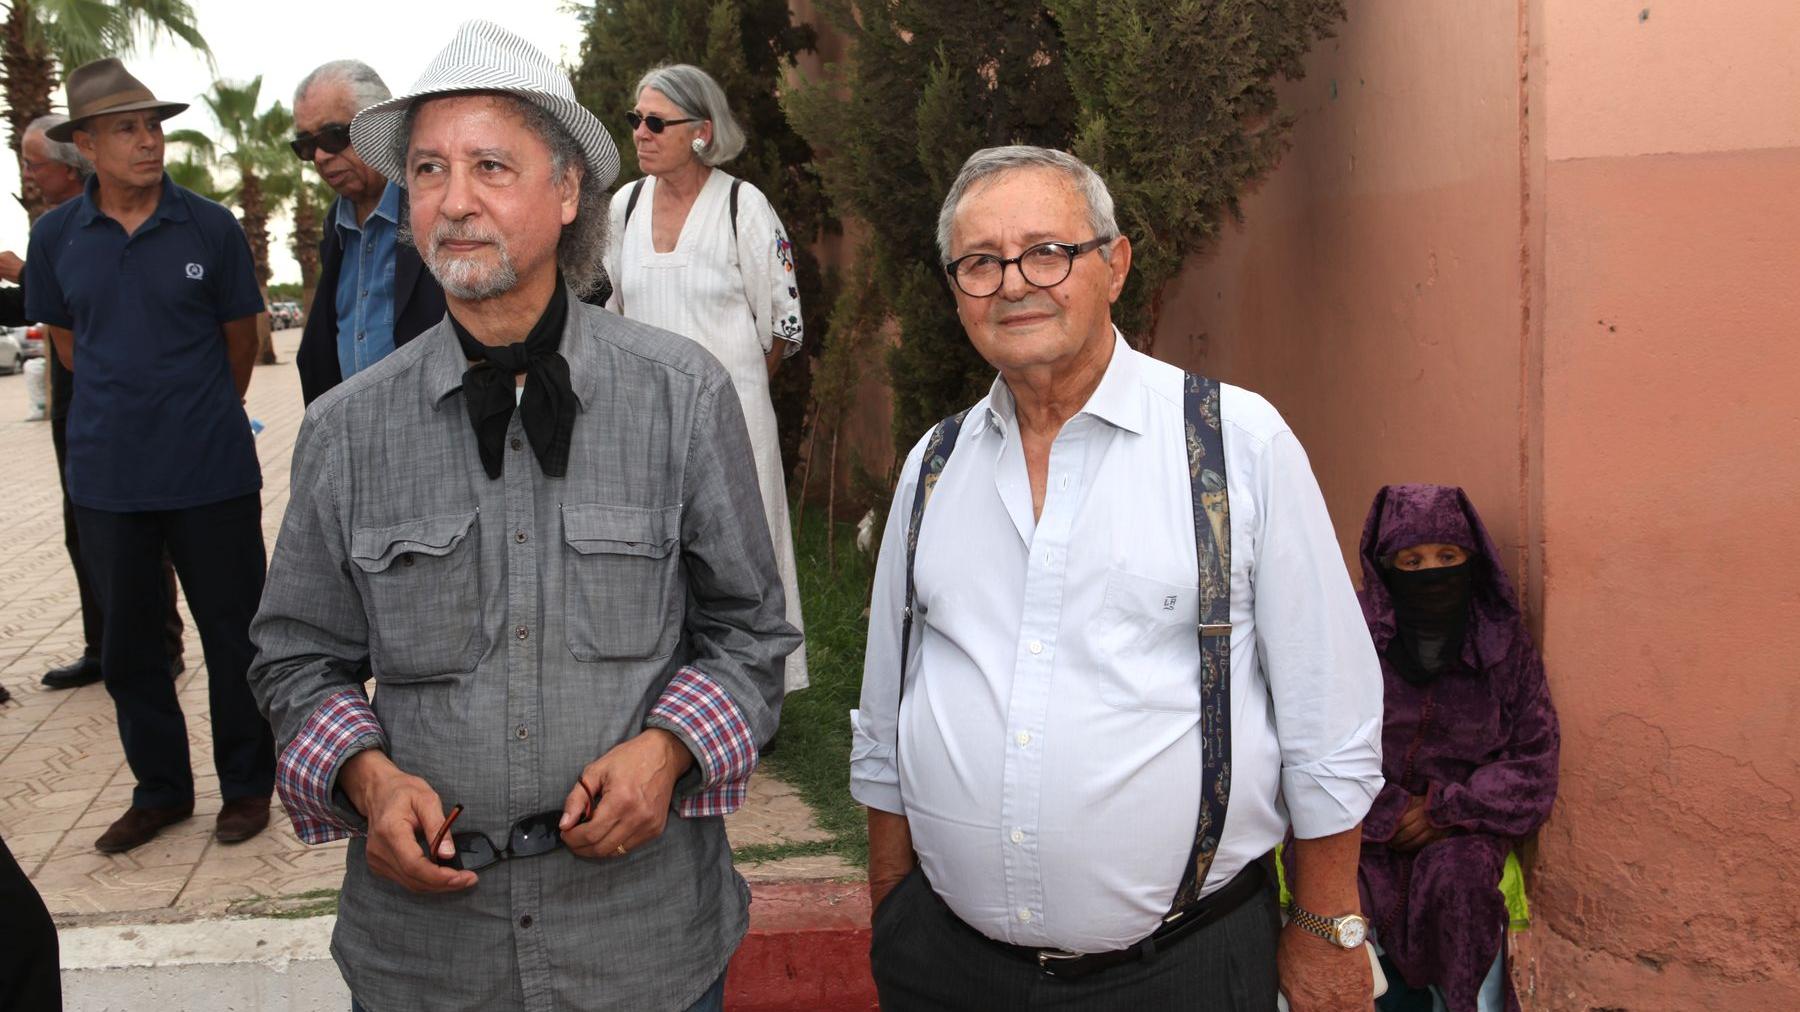 Tout l'univers de l'art était là, notamment représenté par Lucien Amiel, ici aux côtés de Ghani Belmaachi. Grand connaisseur et passionné de l'art pictural marocain, Lucien Amiel est en effet venu saluer l'un de ses plus prestigieux représentants.
